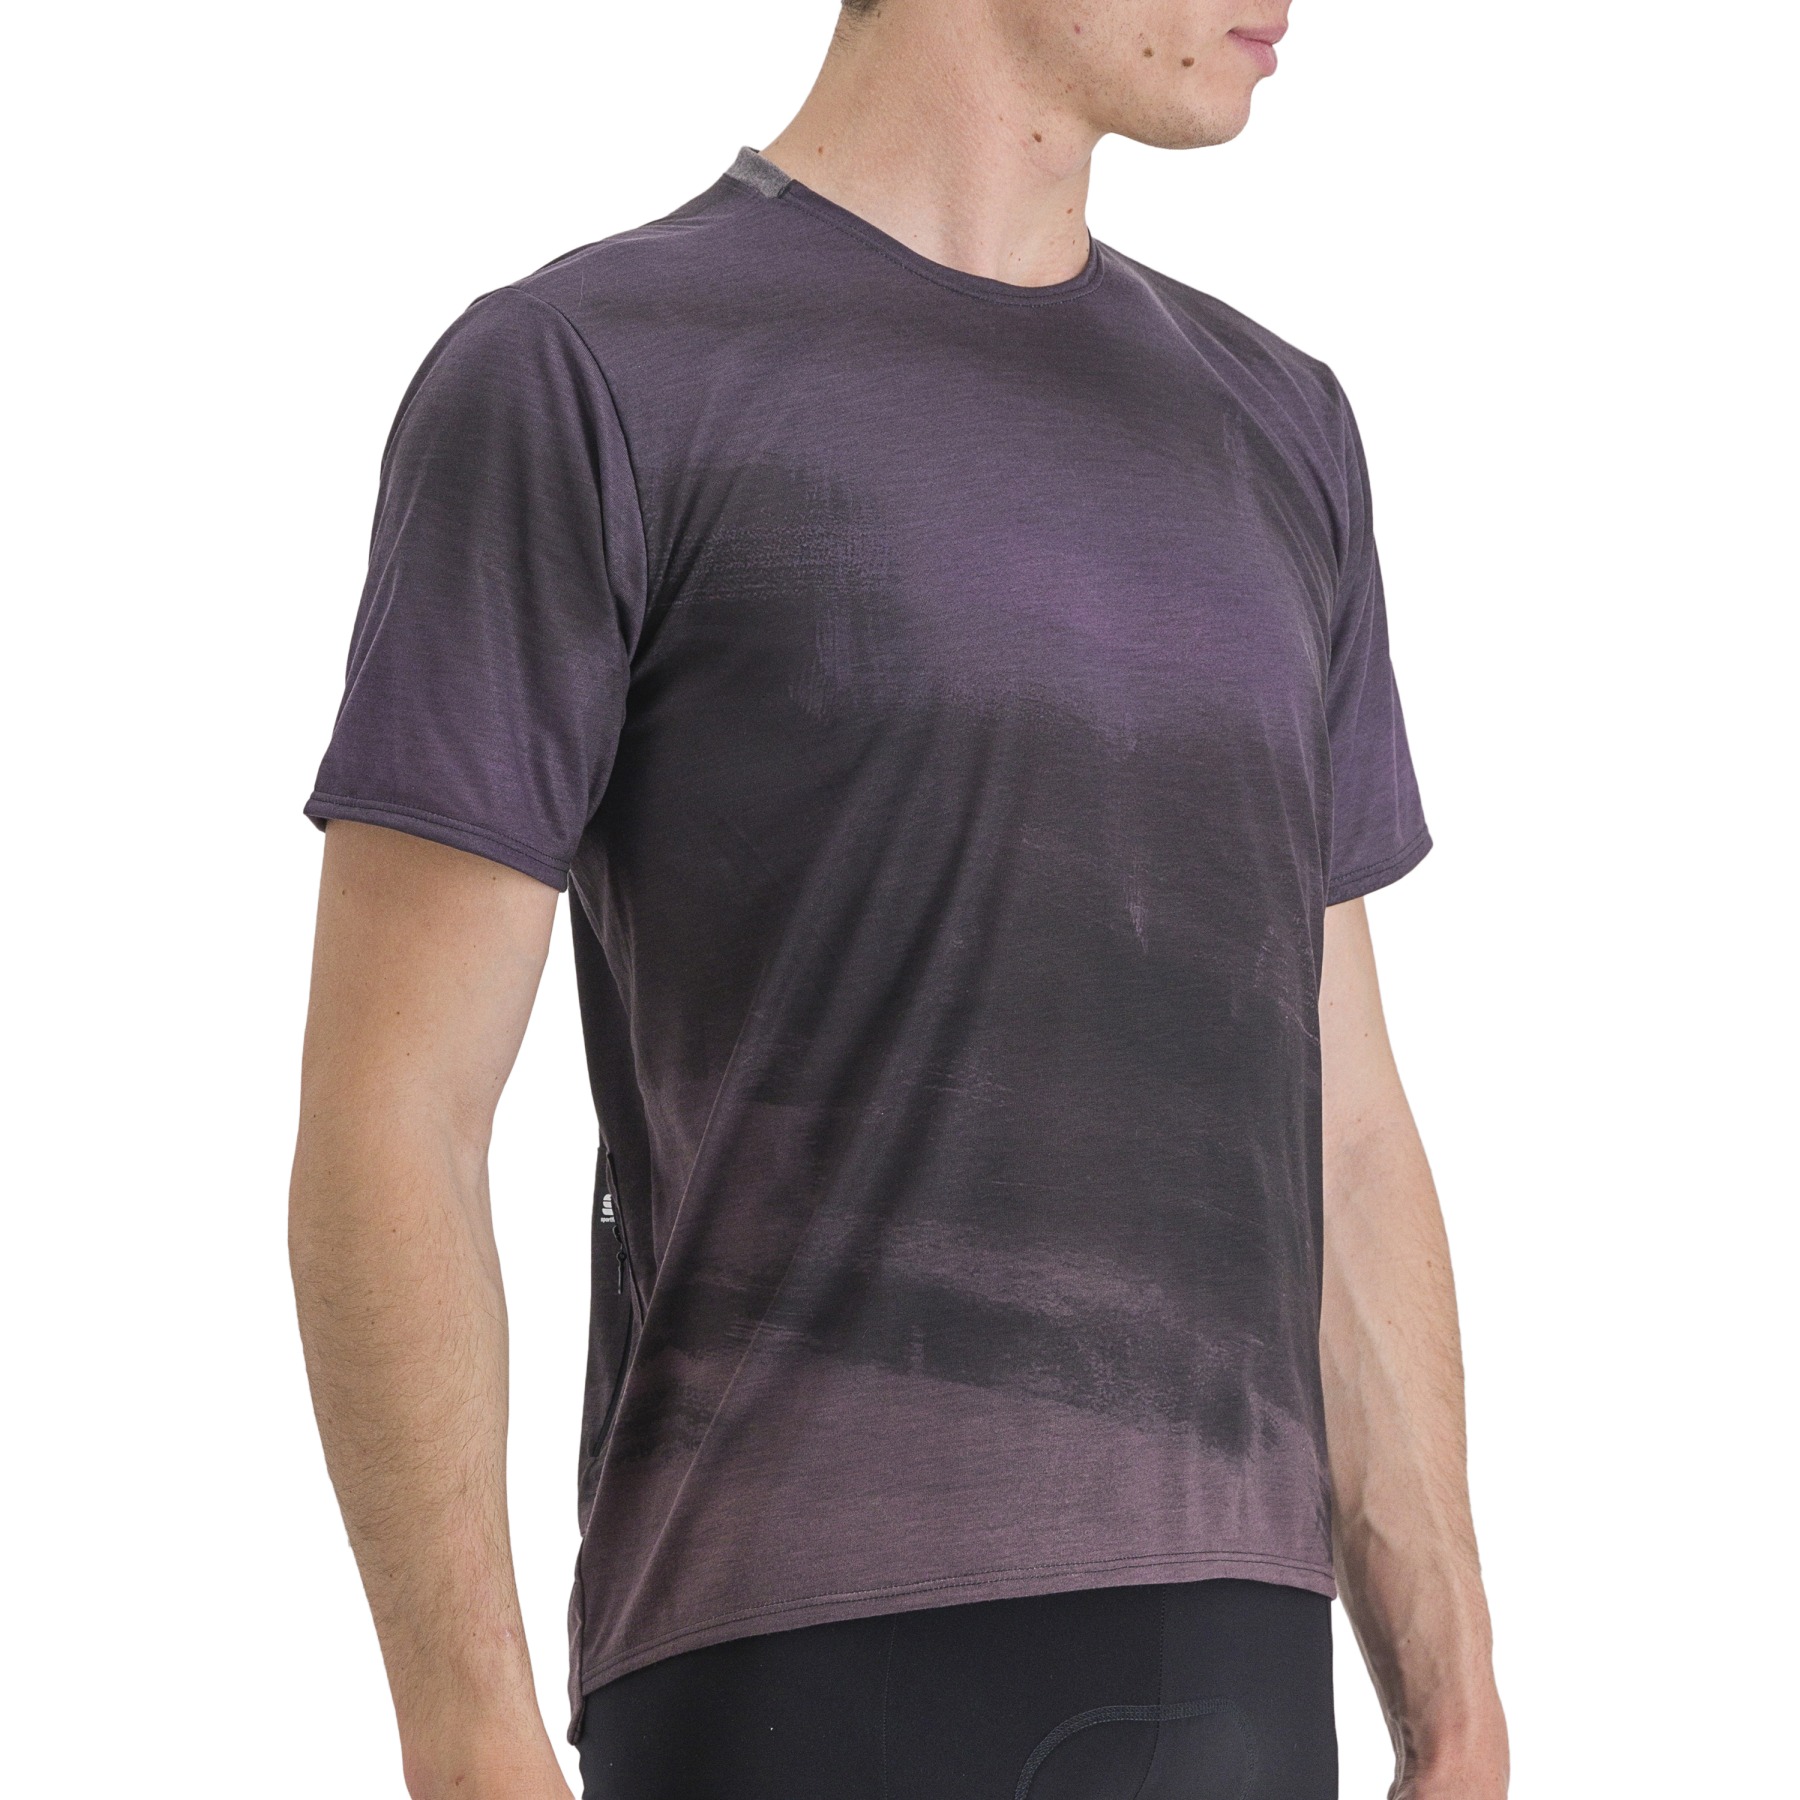 Produktbild von Sportful Flow Giara T-Shirt Herren - 003 Mud